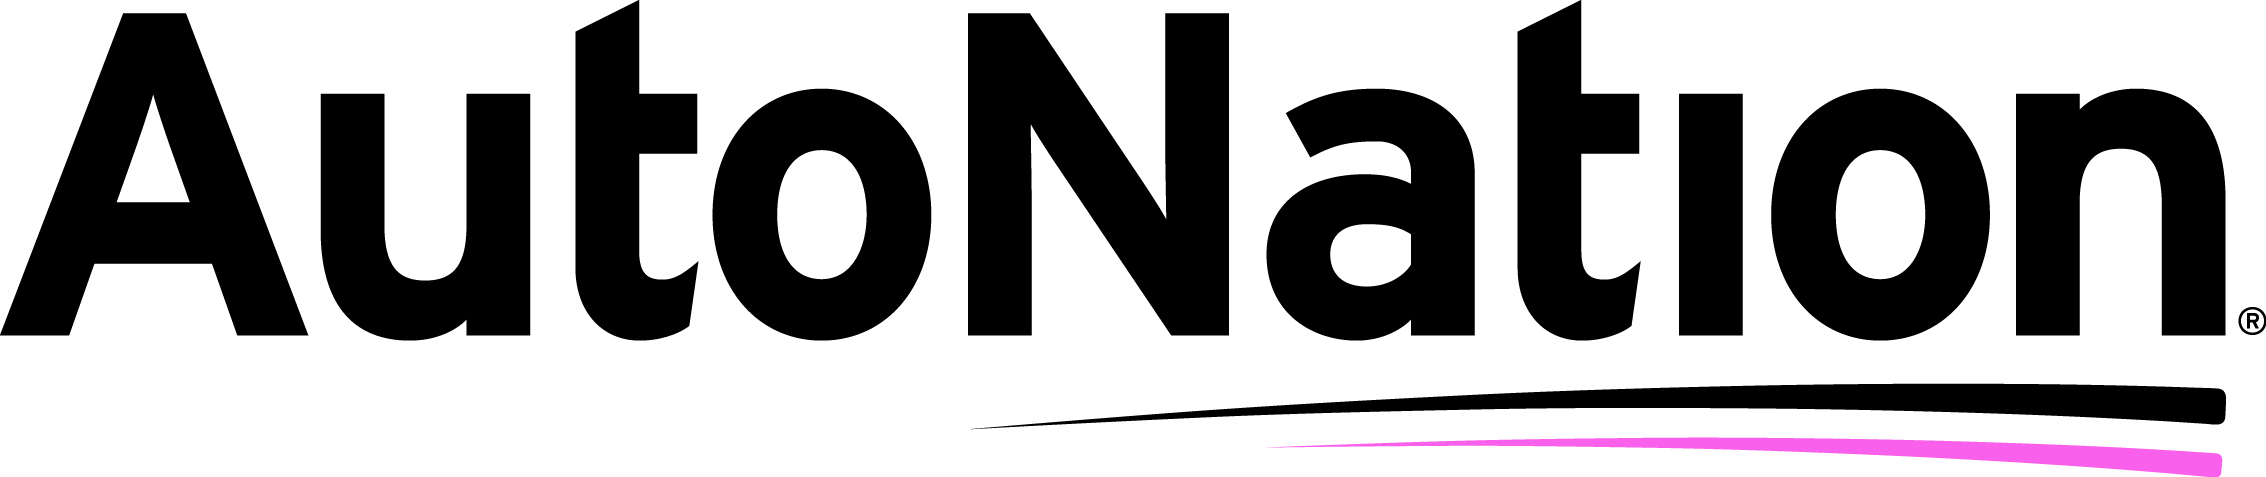 logo for autonation